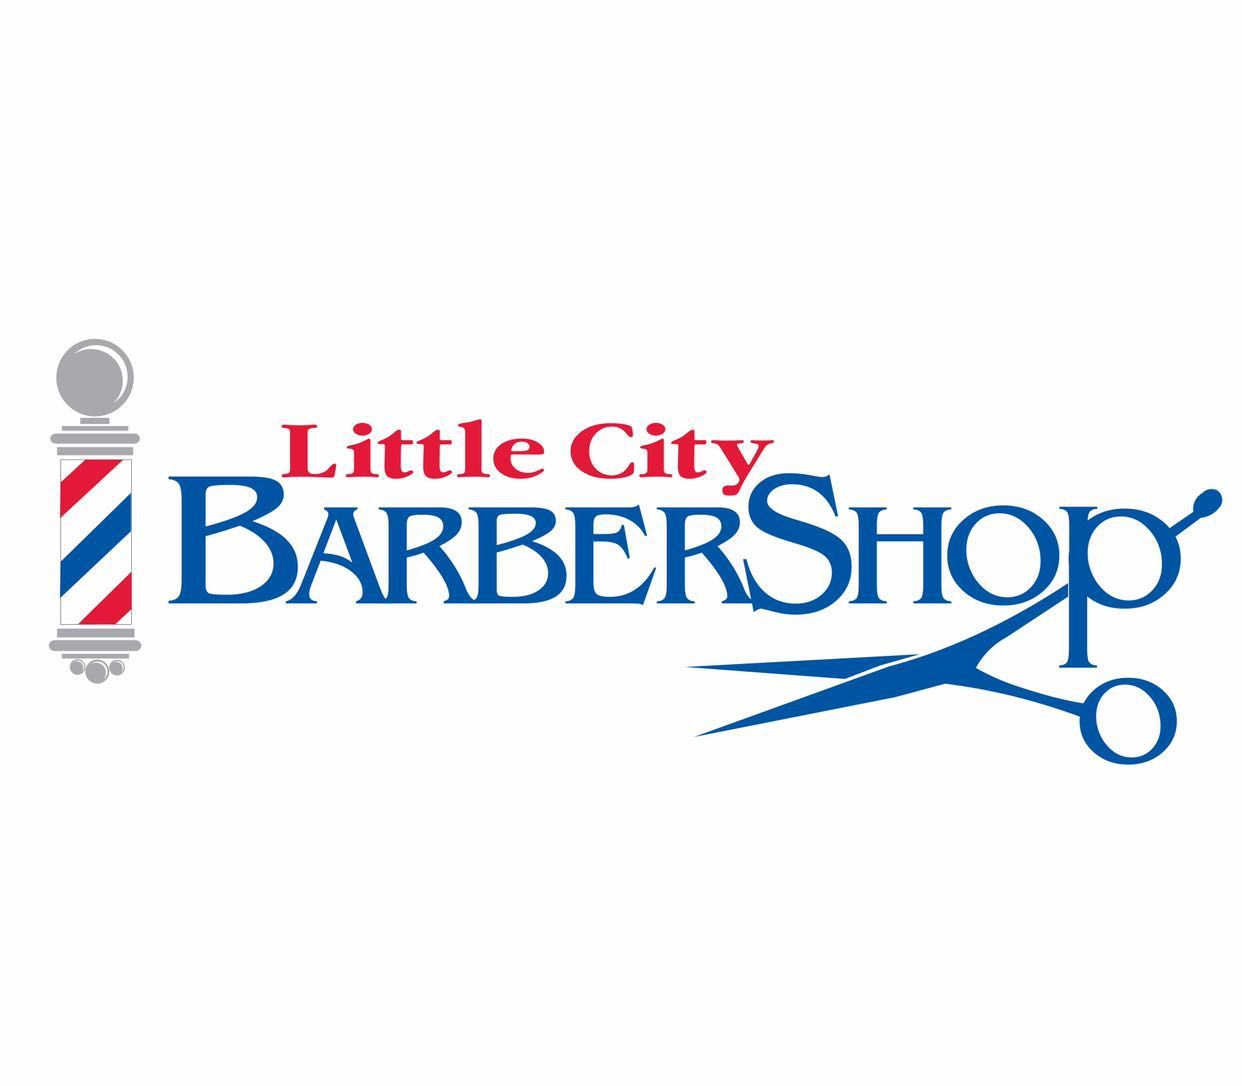 Little City Barber Shop, 6 New Haven Road, Suite 1, Prospect, 06712